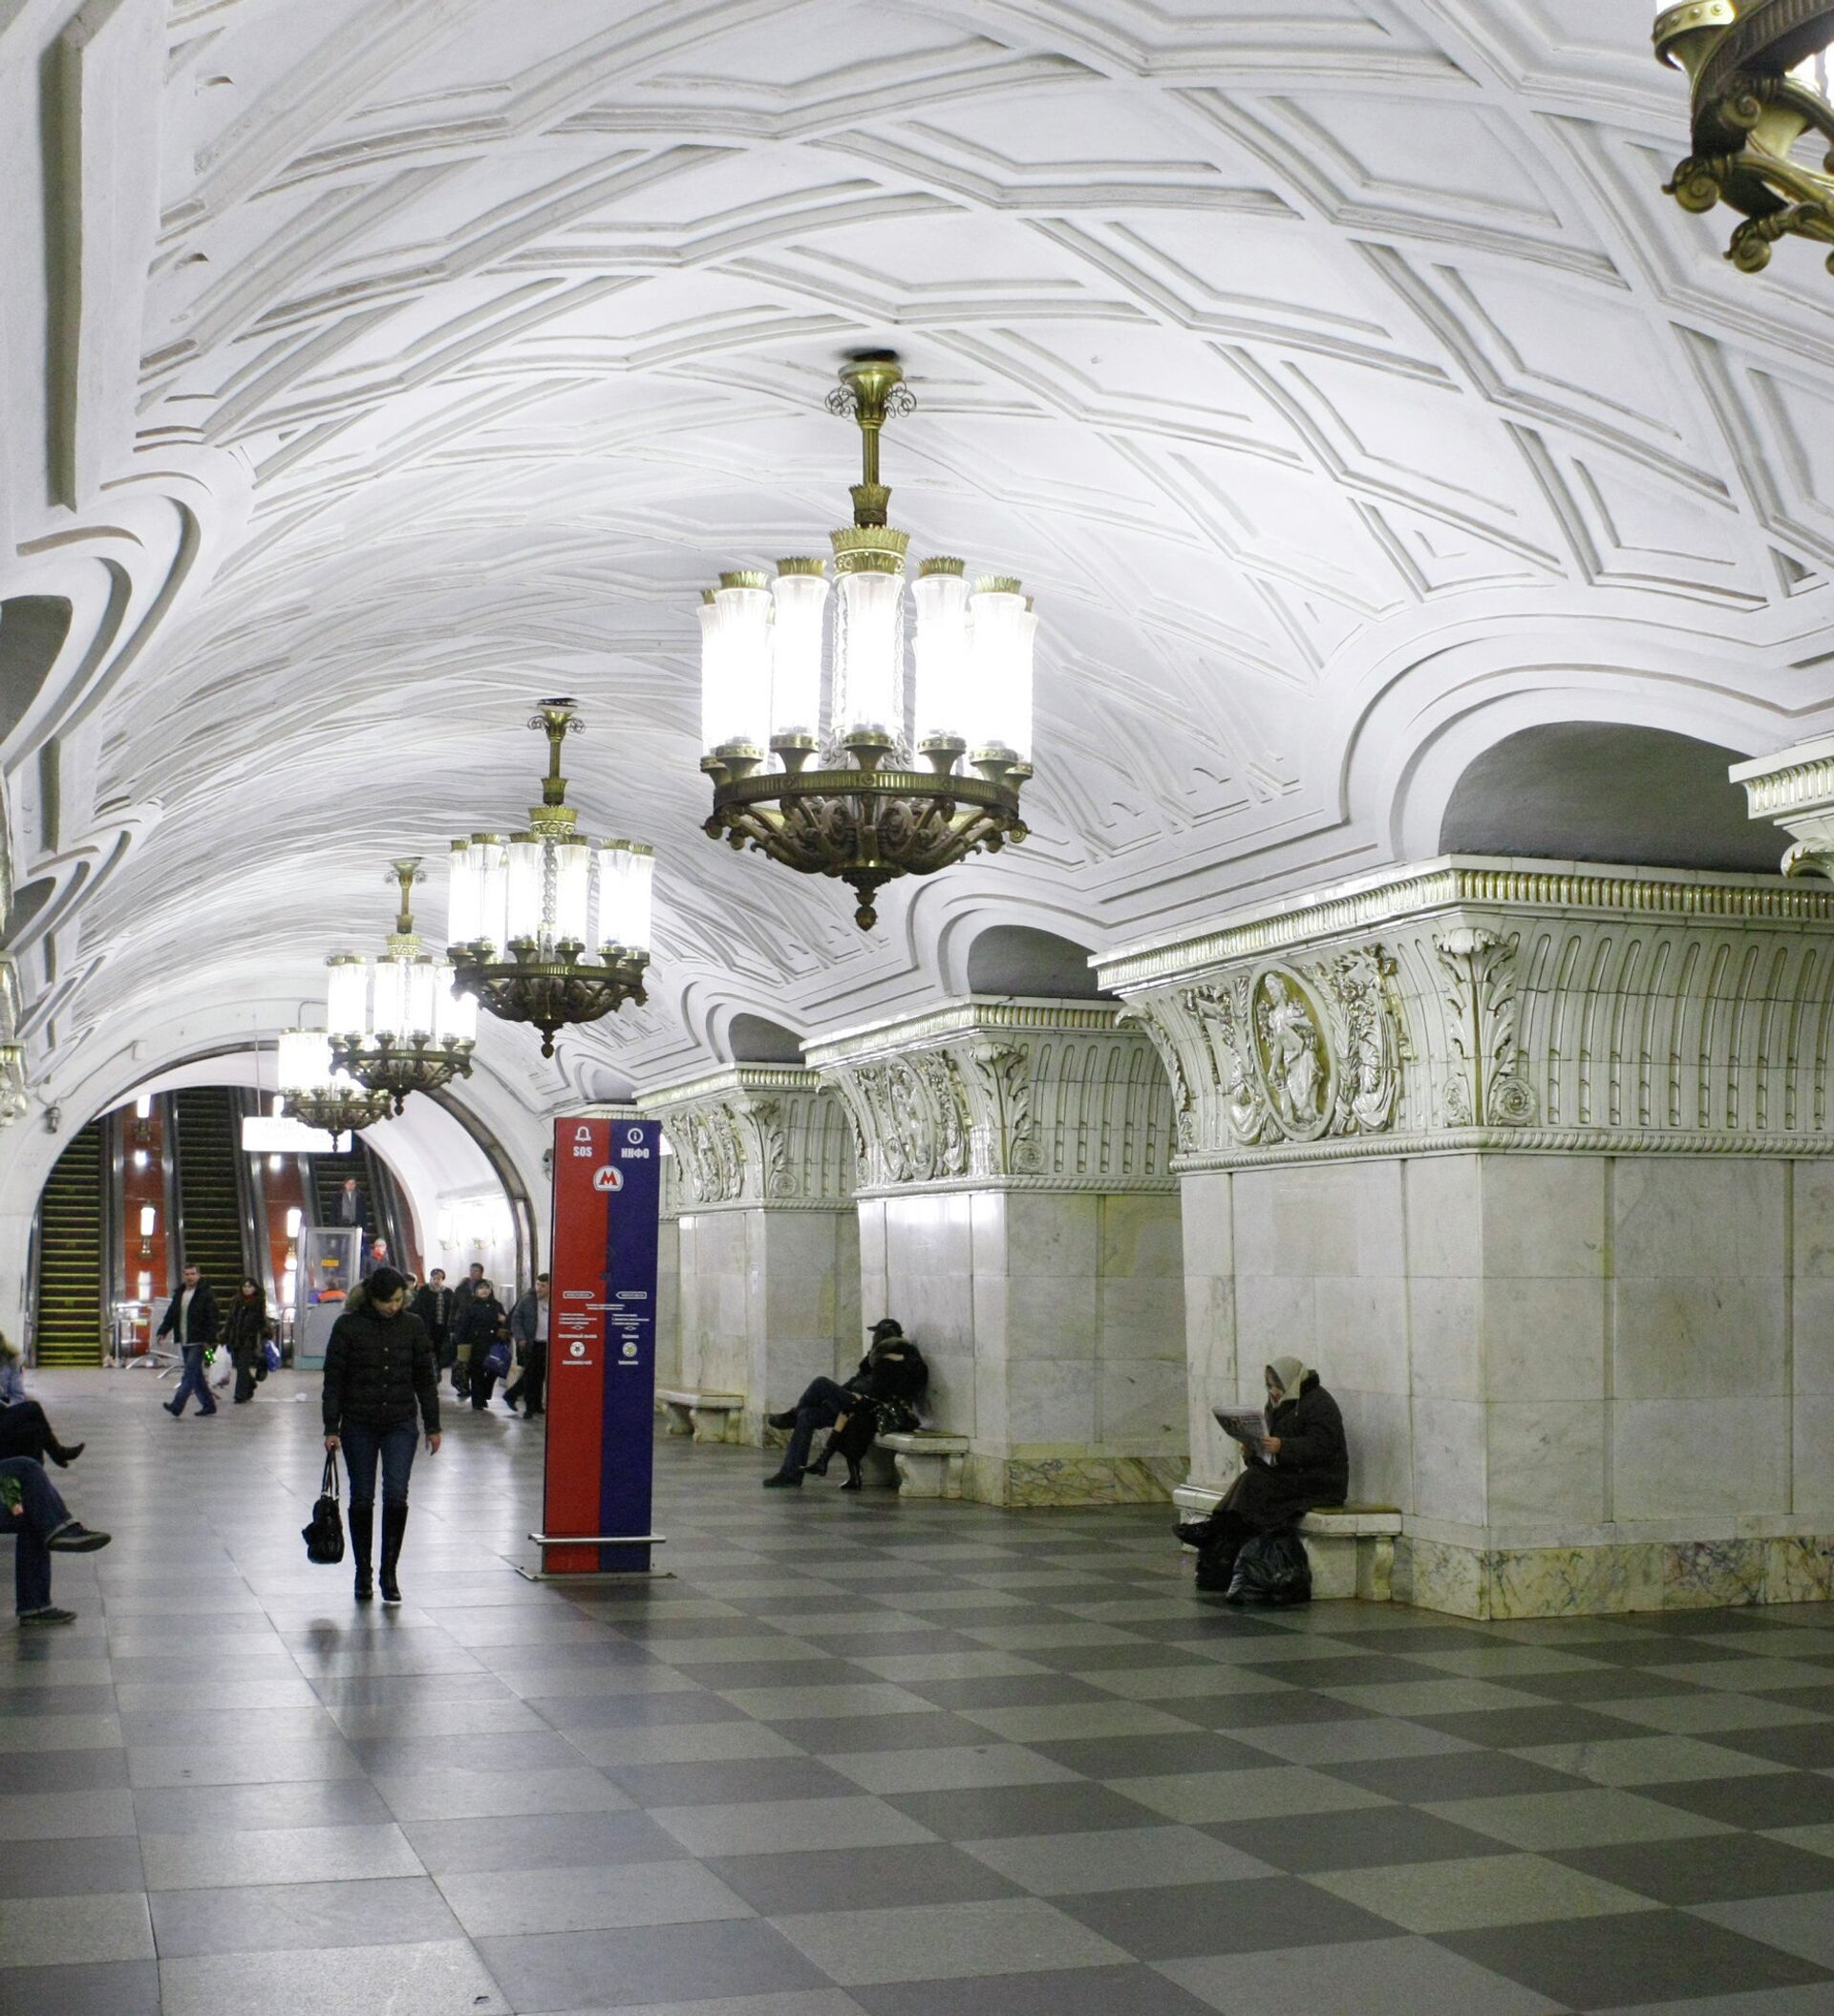 белорусская станция метро москва